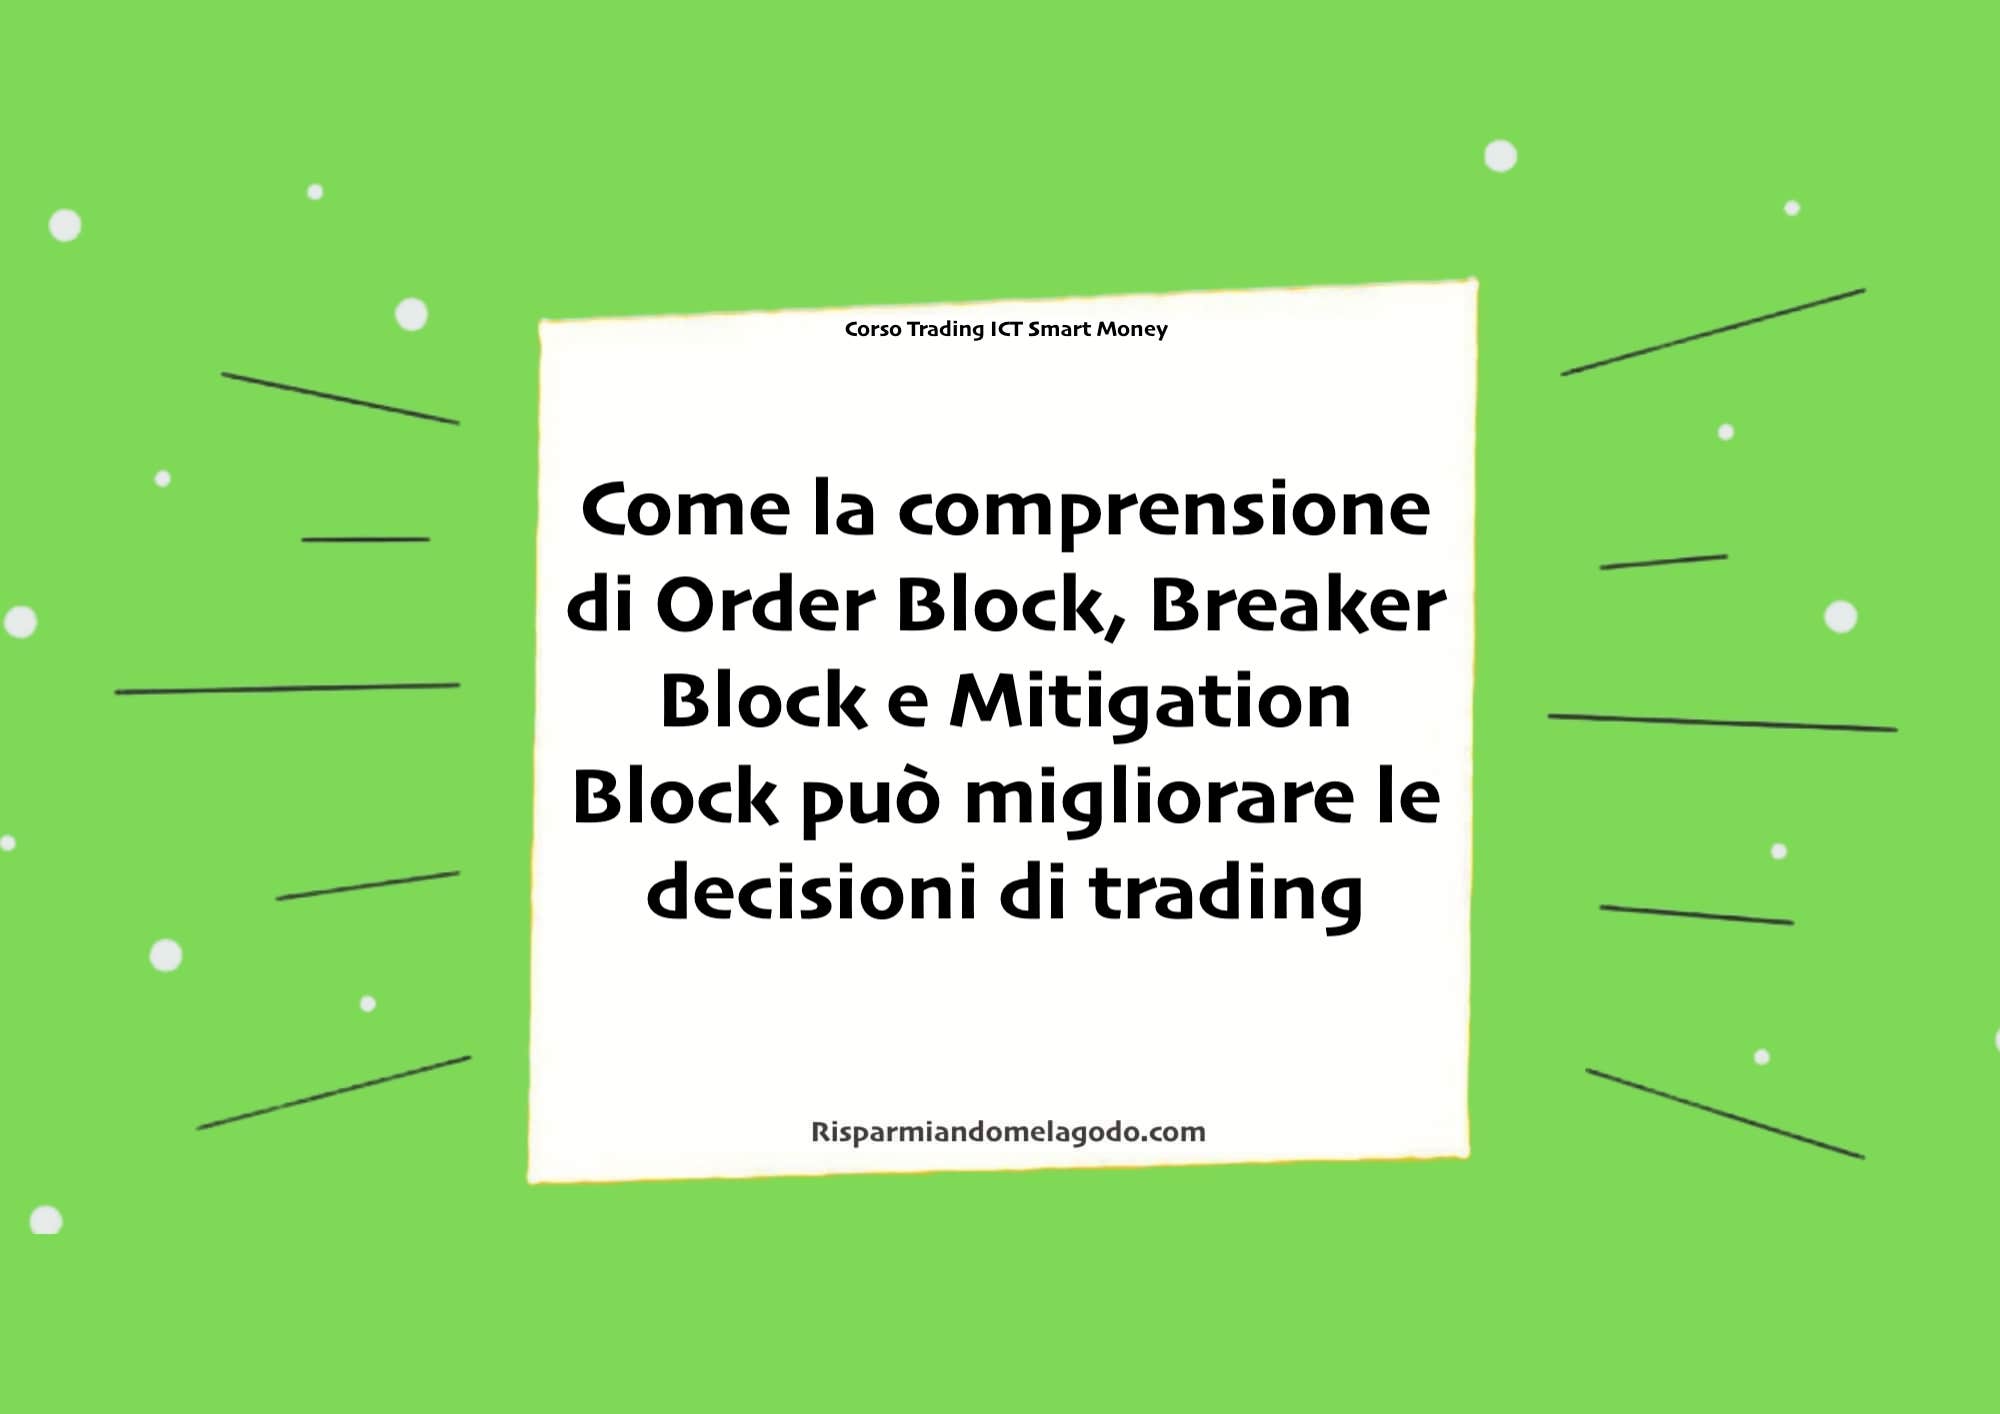 Come la comprensione di Order Block, Breaker Block e Mitigation Block può migliorare le decisioni di trading